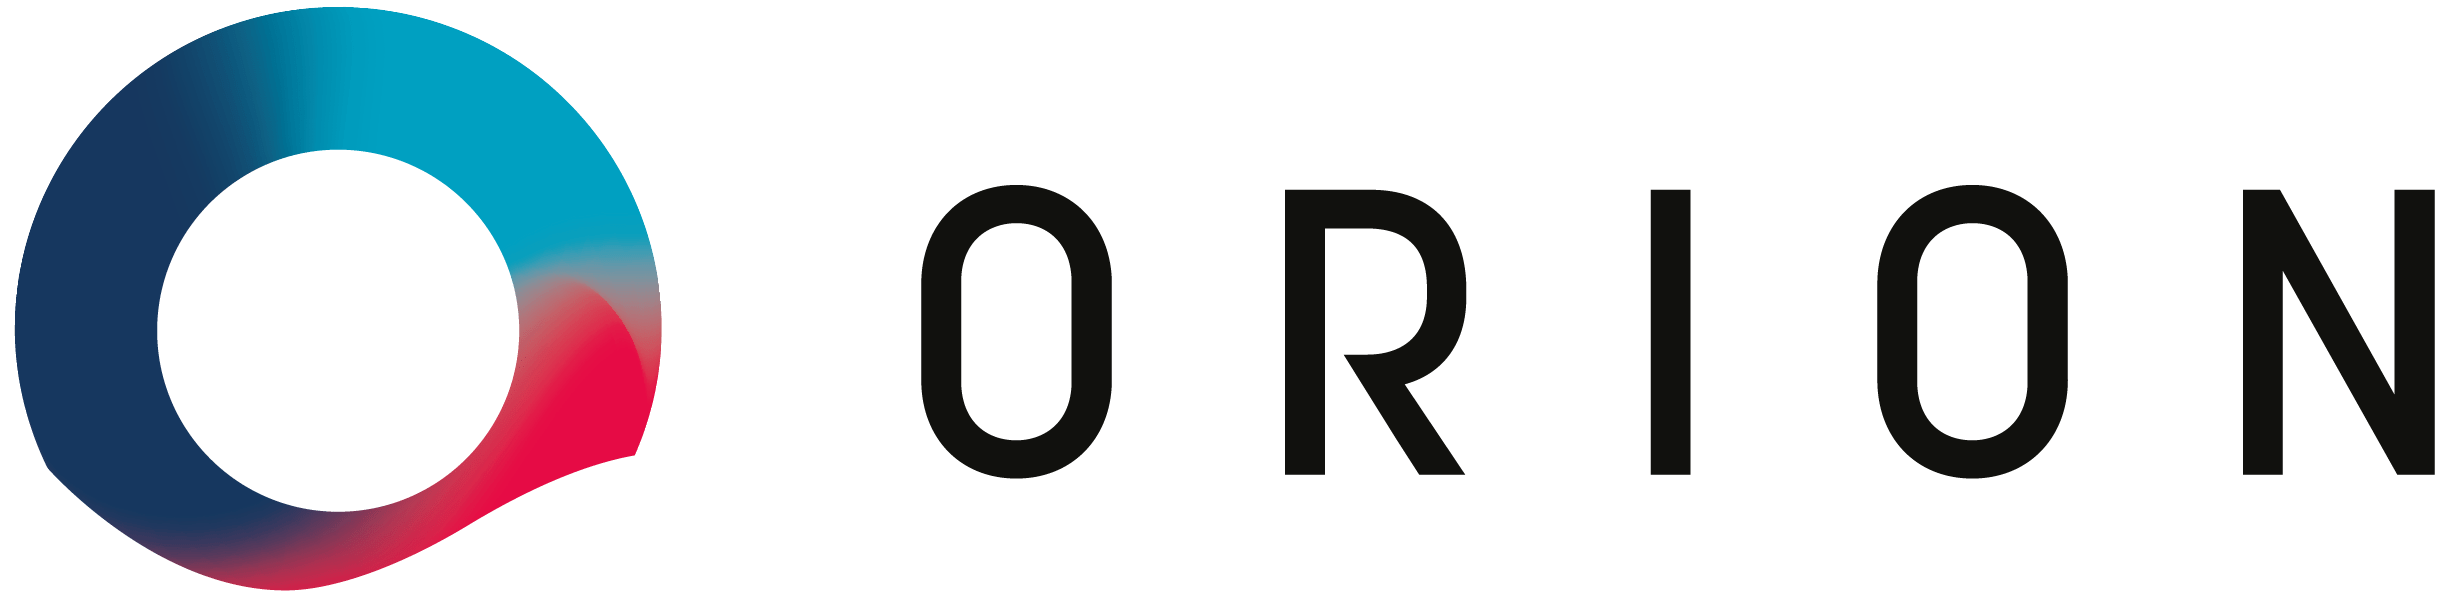 Soluciones Orion logo